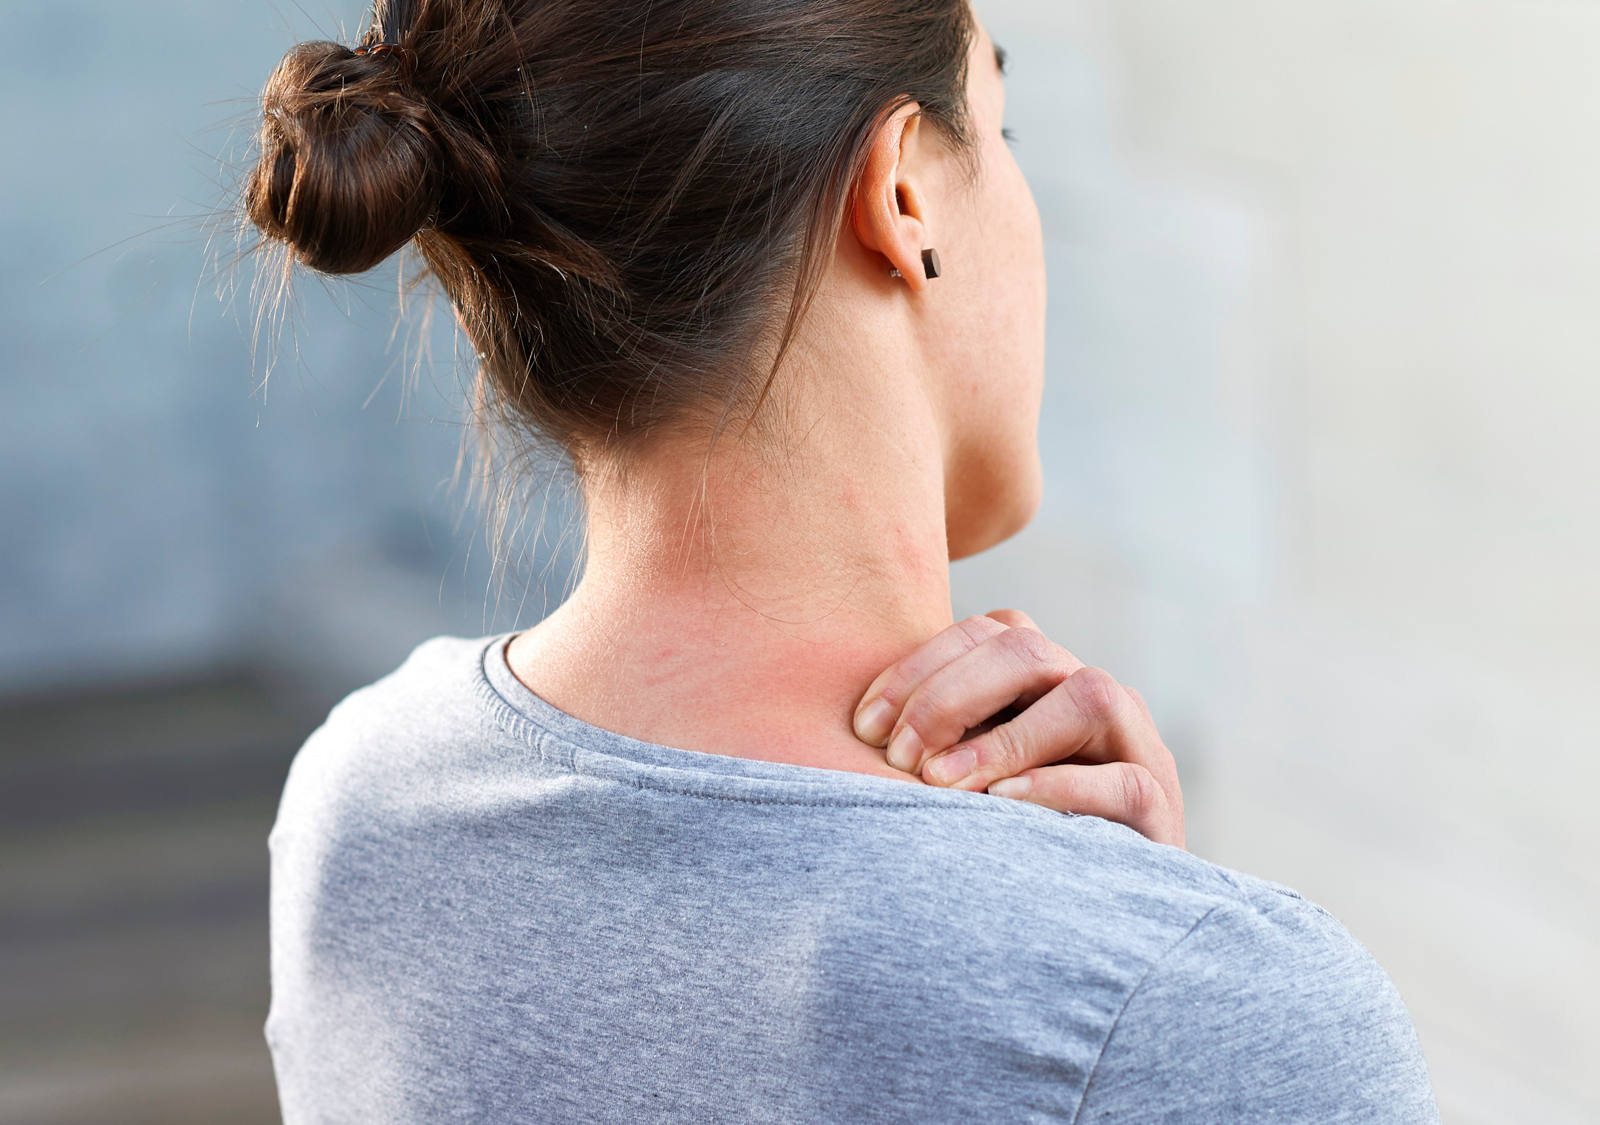 Nackenmassage: Einseitige Streichung von hinten